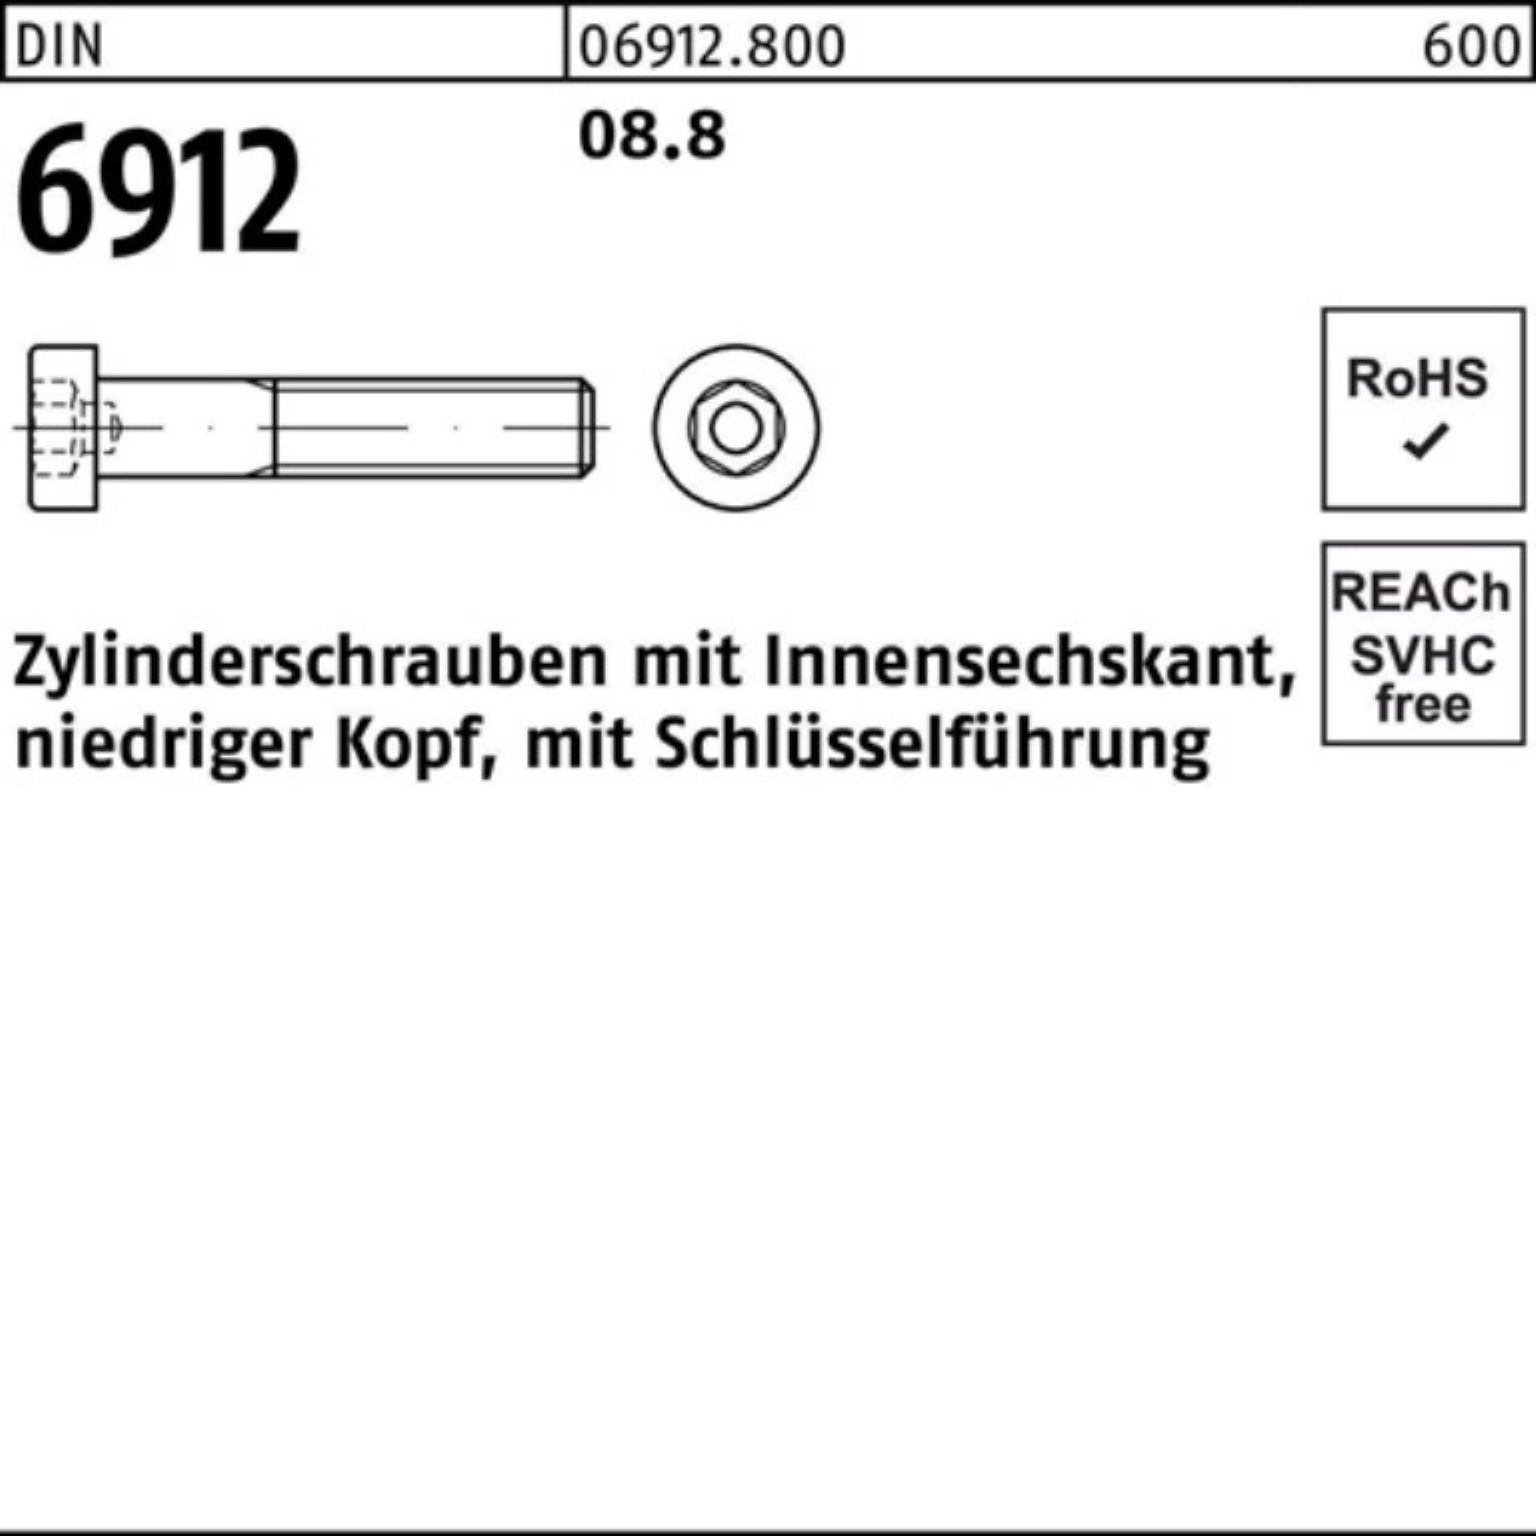 70 Pack 1 DIN Innen-6kt 100er 6912 Zylinderschraube DI Stück Zylinderschraube 8.8 Reyher M30x